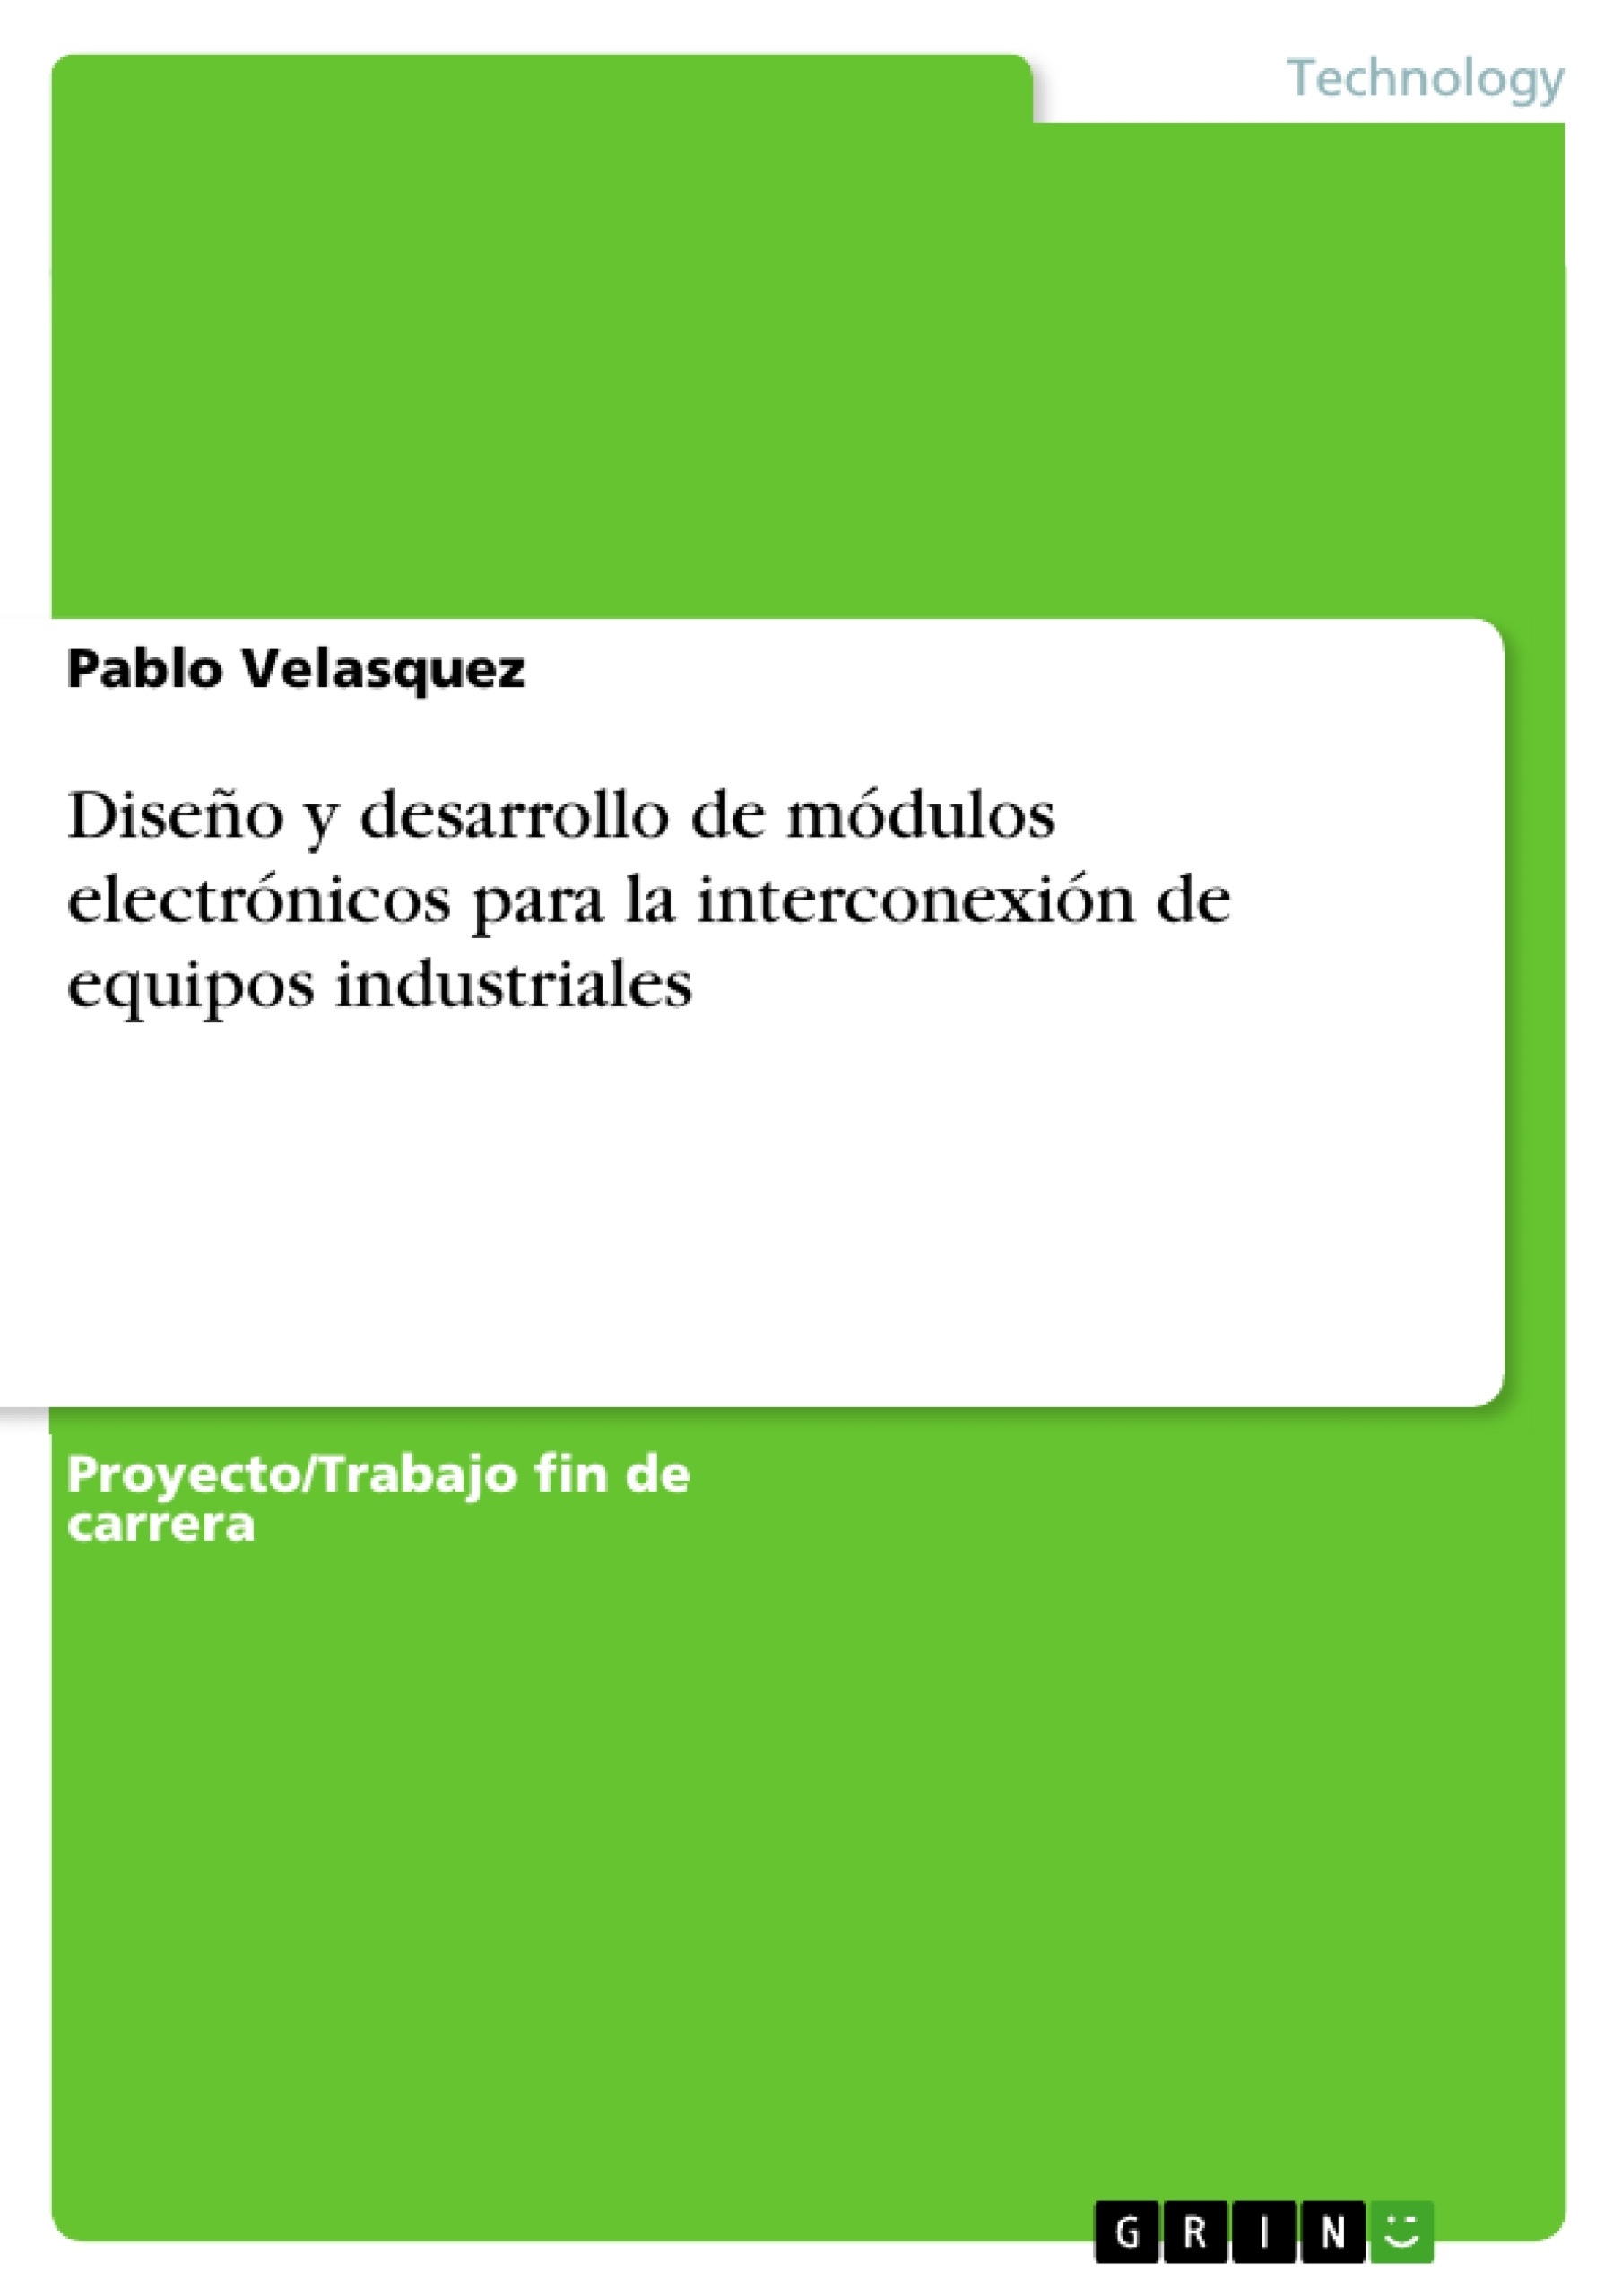 Título: Diseño y desarrollo de módulos electrónicos para la interconexión de equipos industriales con la Web a través de los protocolos ModBus y MQTT